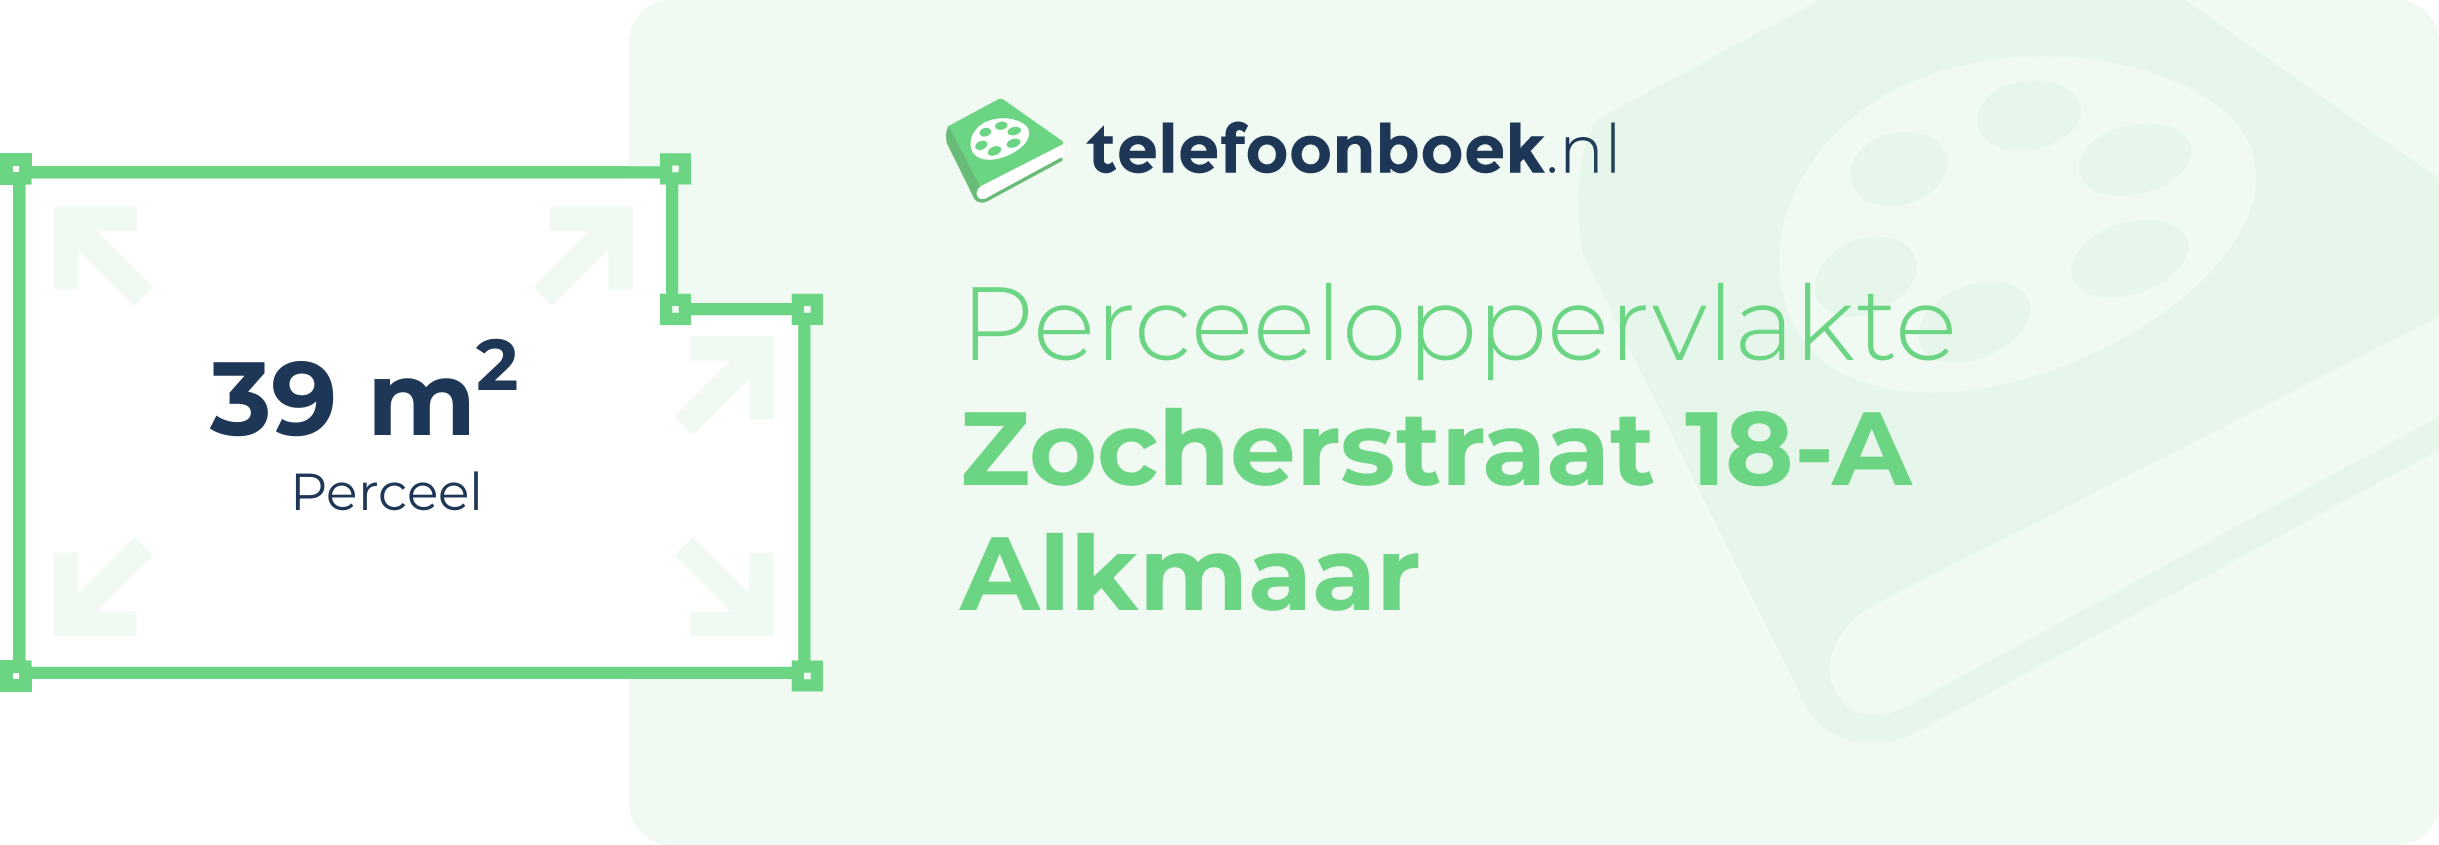 Perceeloppervlakte Zocherstraat 18-A Alkmaar